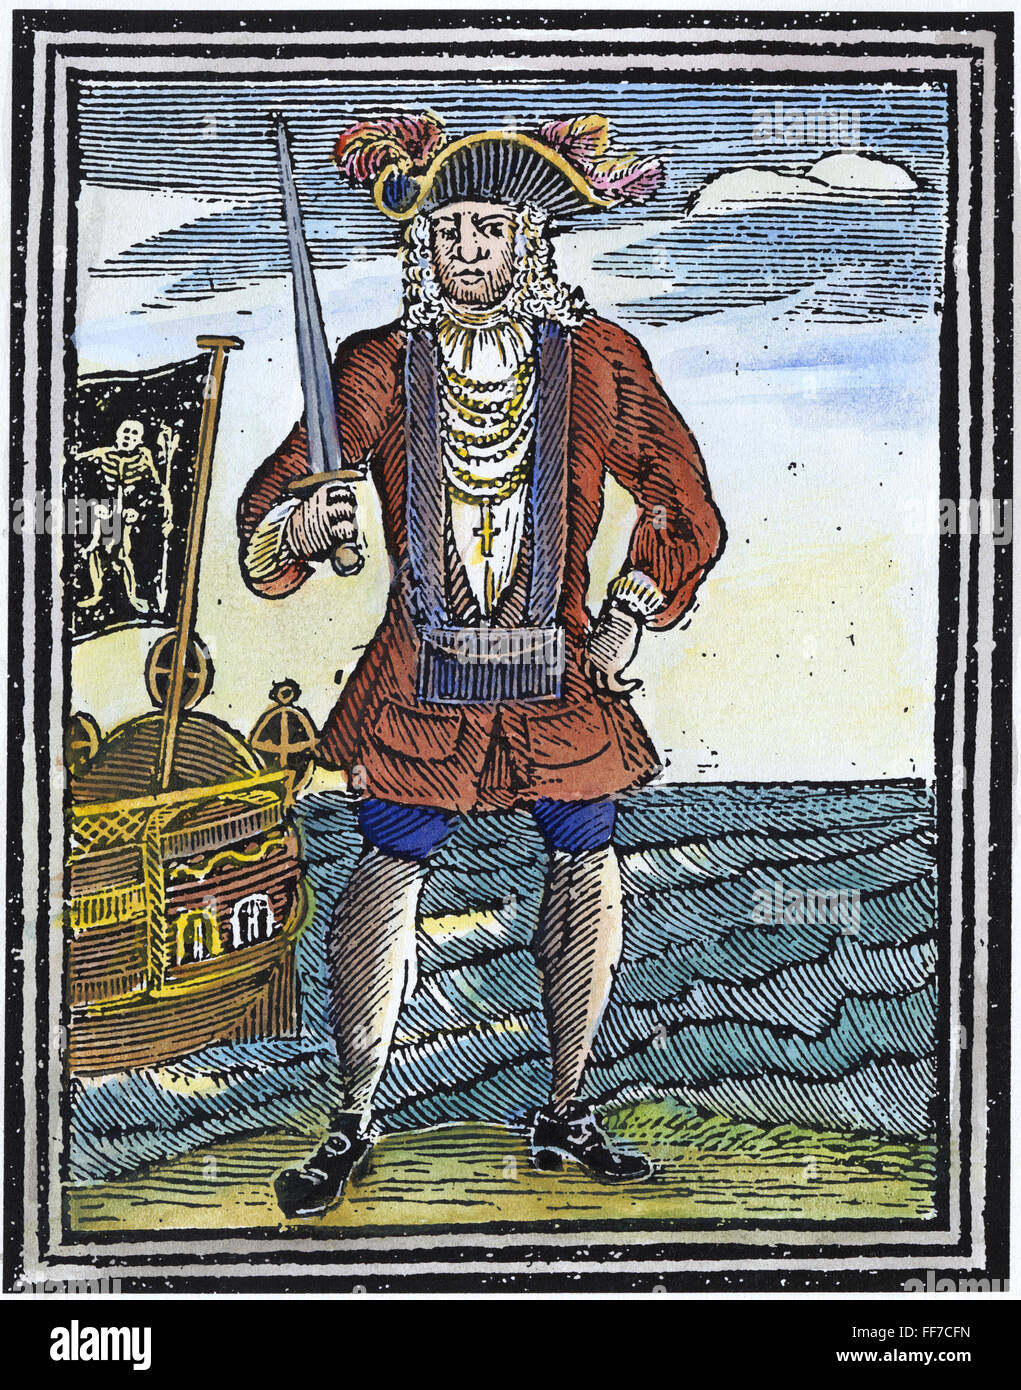 PIRATE, 1725. /Nla pirate Bartholomew Roberts. Anglais couleur gravure sur bois, 1725. Banque D'Images